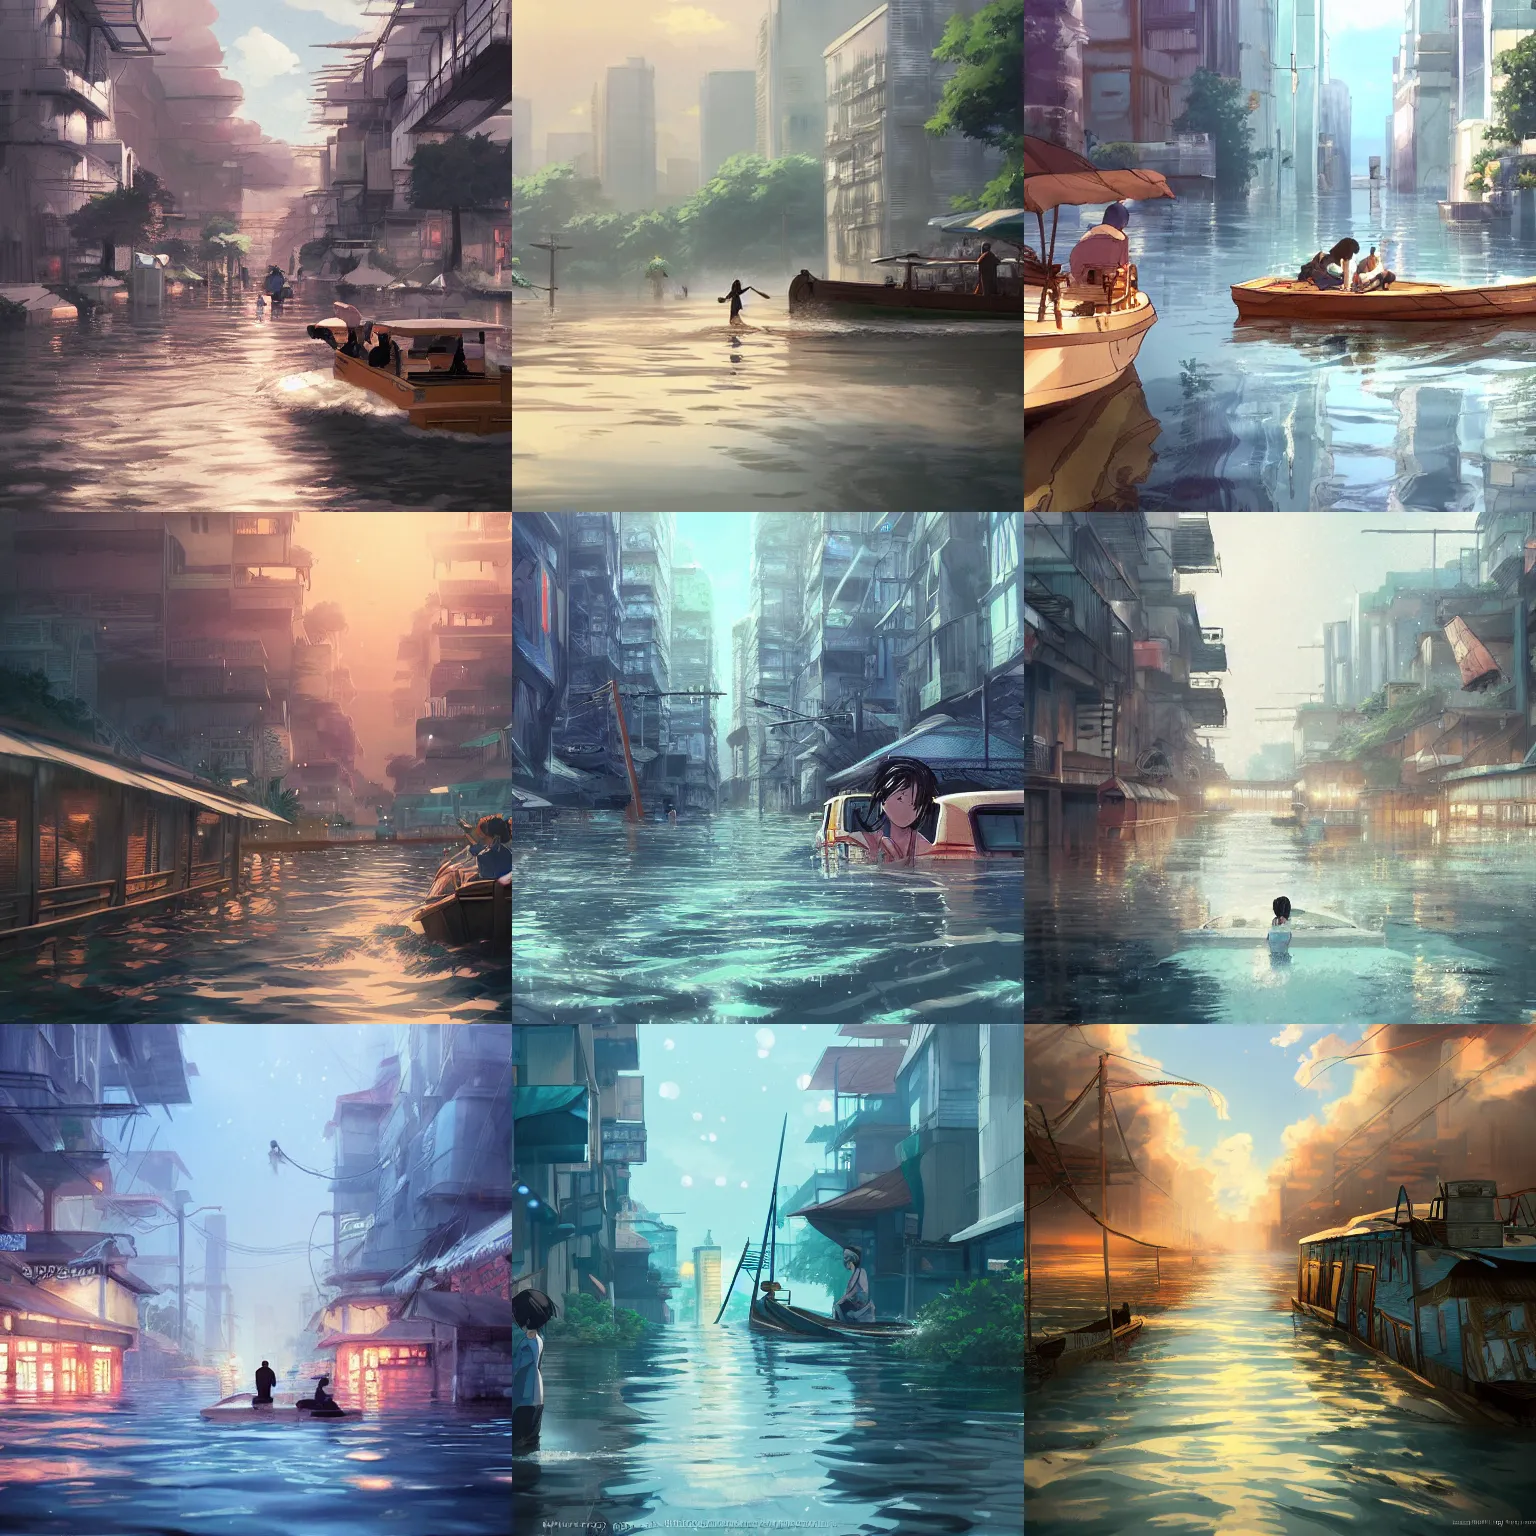 Prompt: flooded dense city, riding on a wooden boat, Makoto Shinkai, anime, trending on ArtStation, digital art